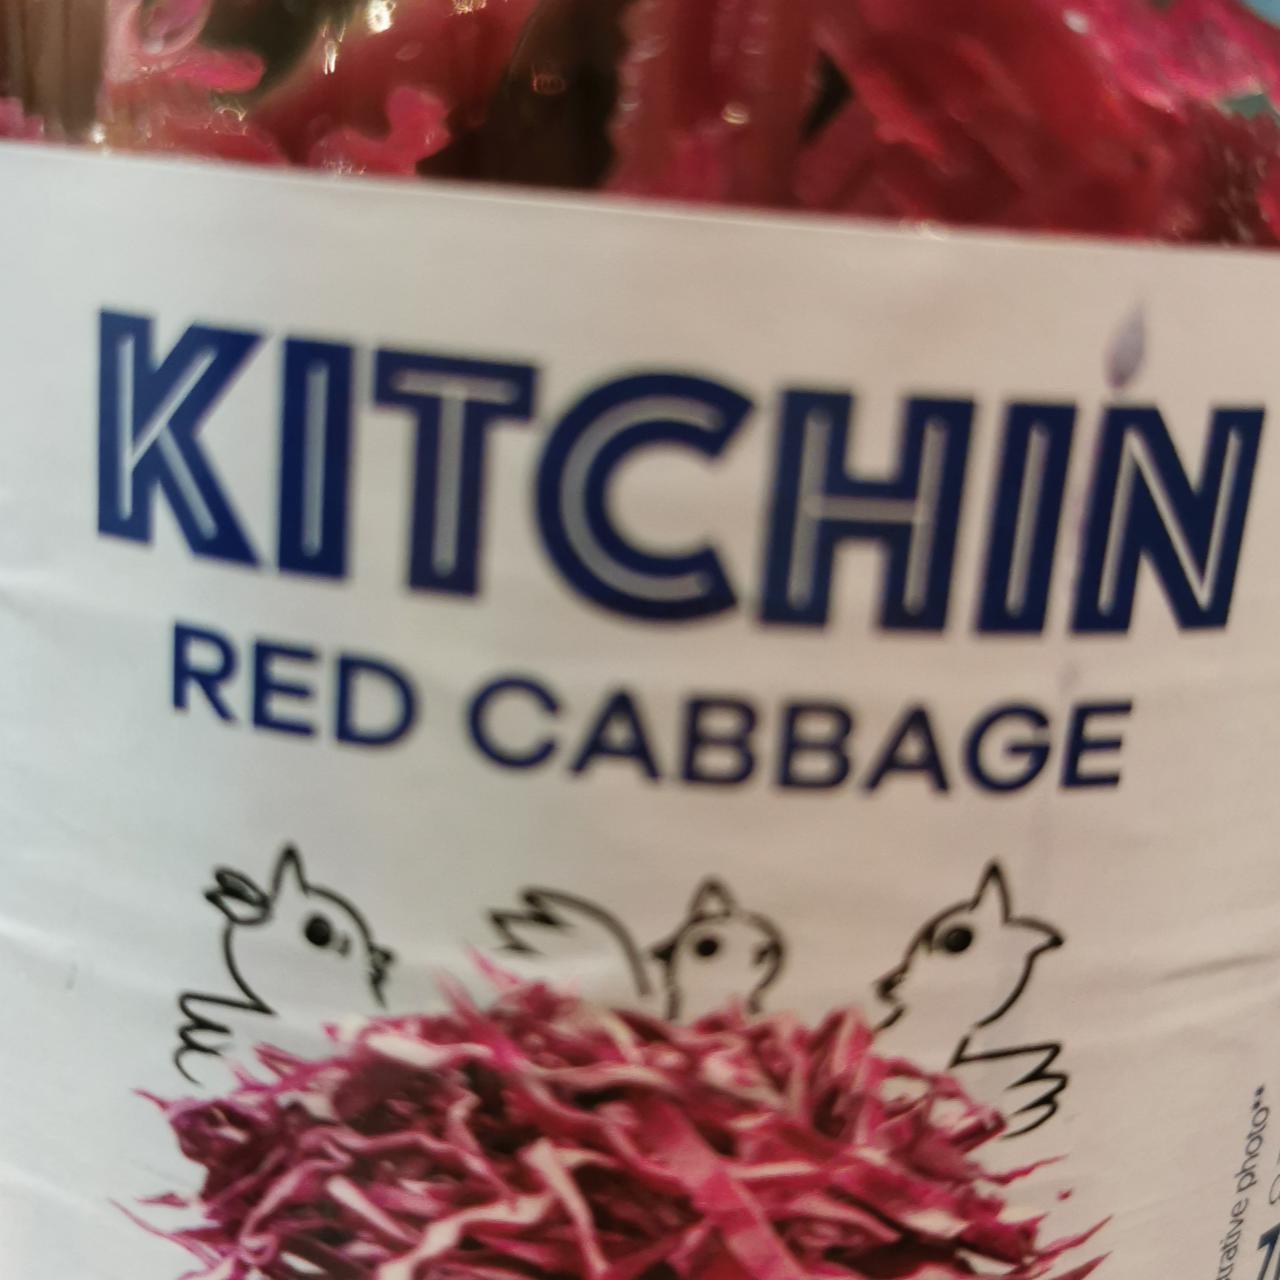 Fotografie - Kitchin red cabbage